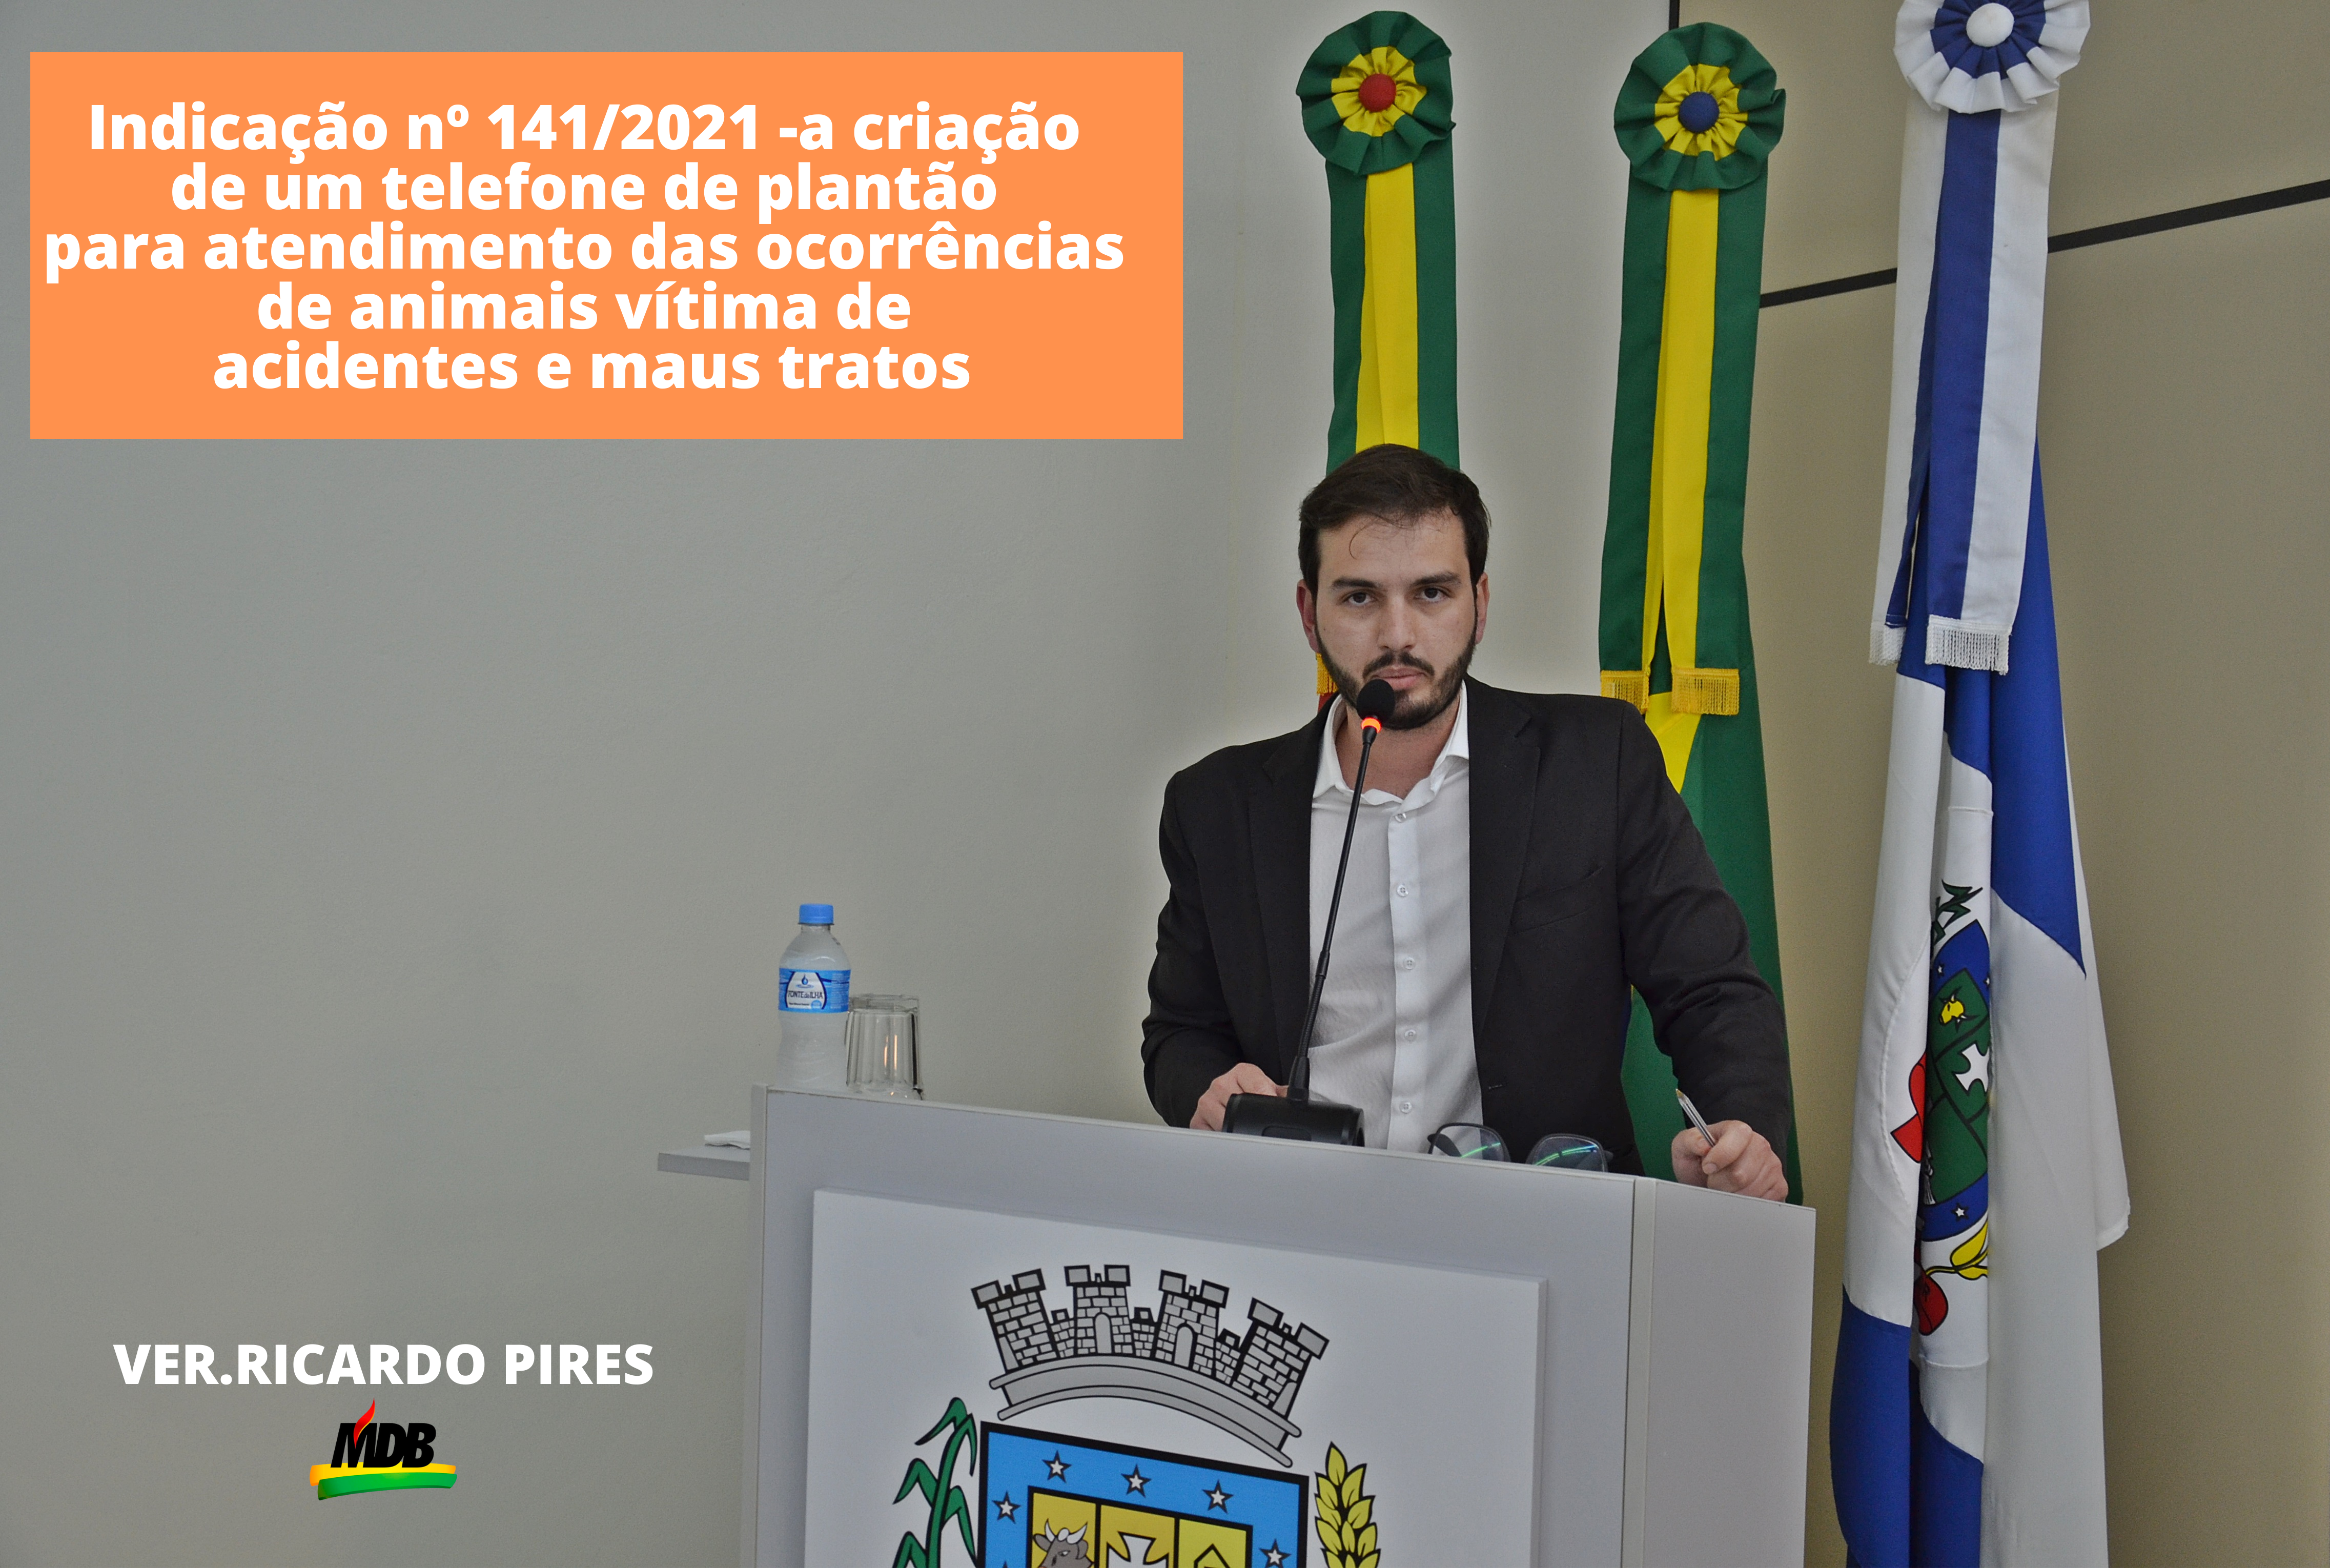 Ricardo propõe a criação de um telefone de plantão para atendimento das ocorrências de animais vítima de acidentes e maus tratos